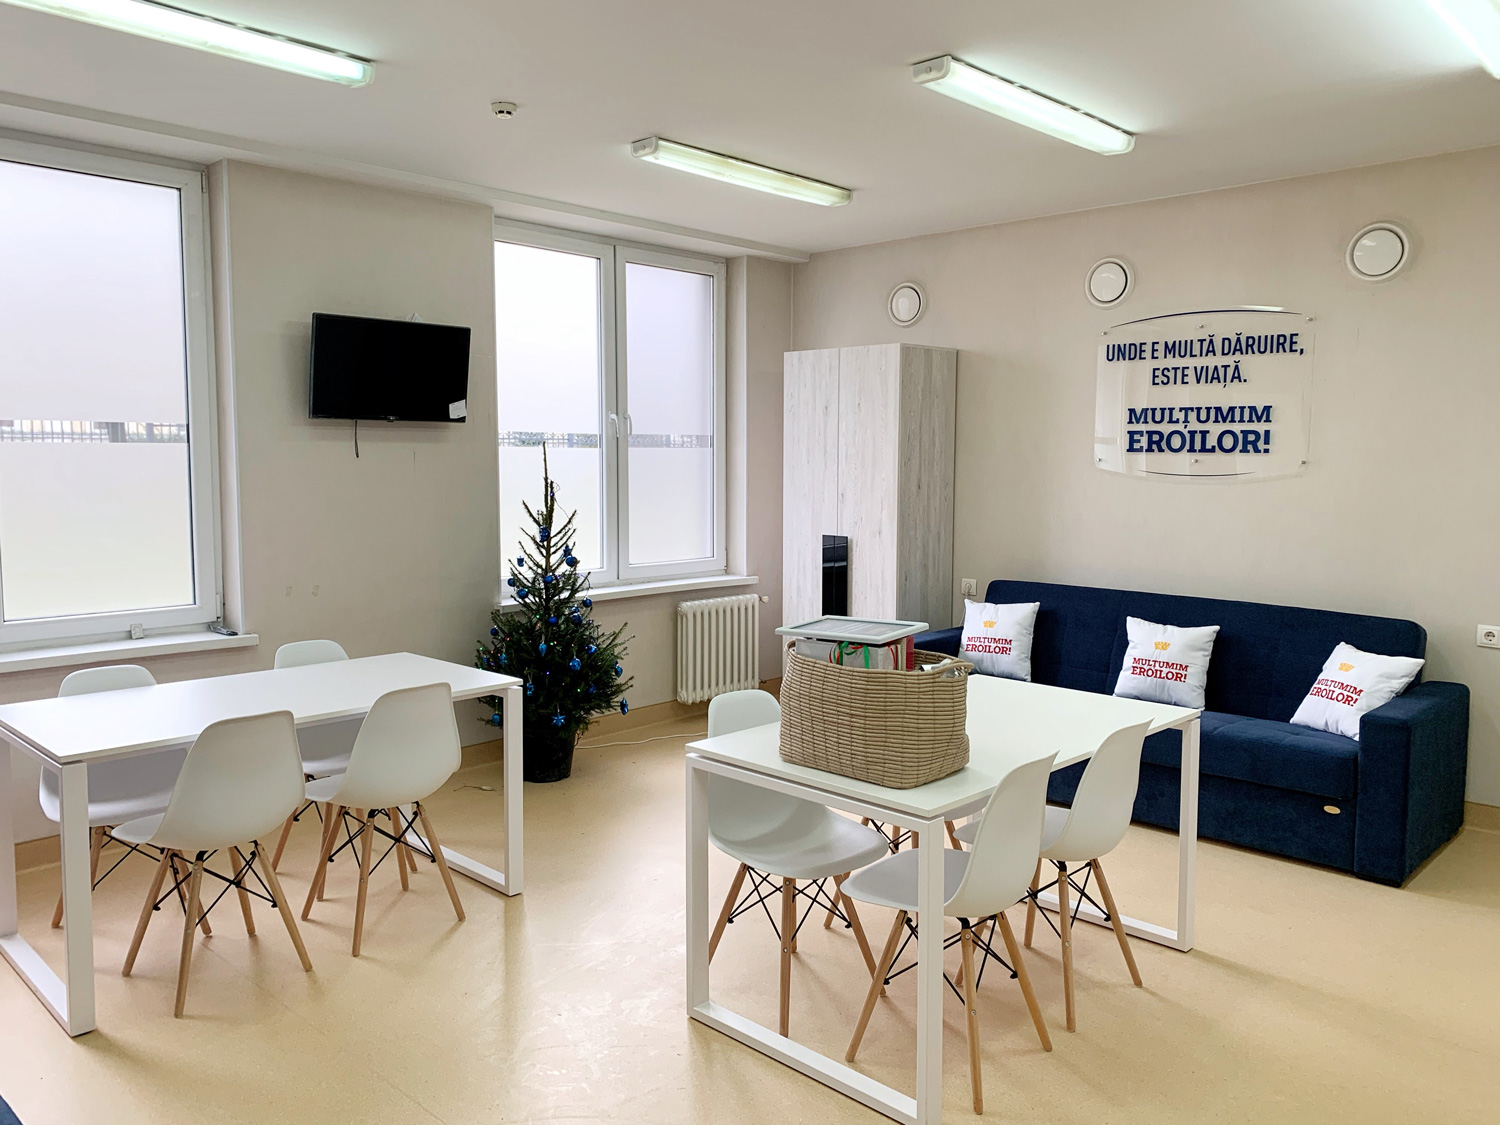 Proiectul Chișinău ”Mulțumim Eroilor!” aduce camere moderne de odihnă în spitale